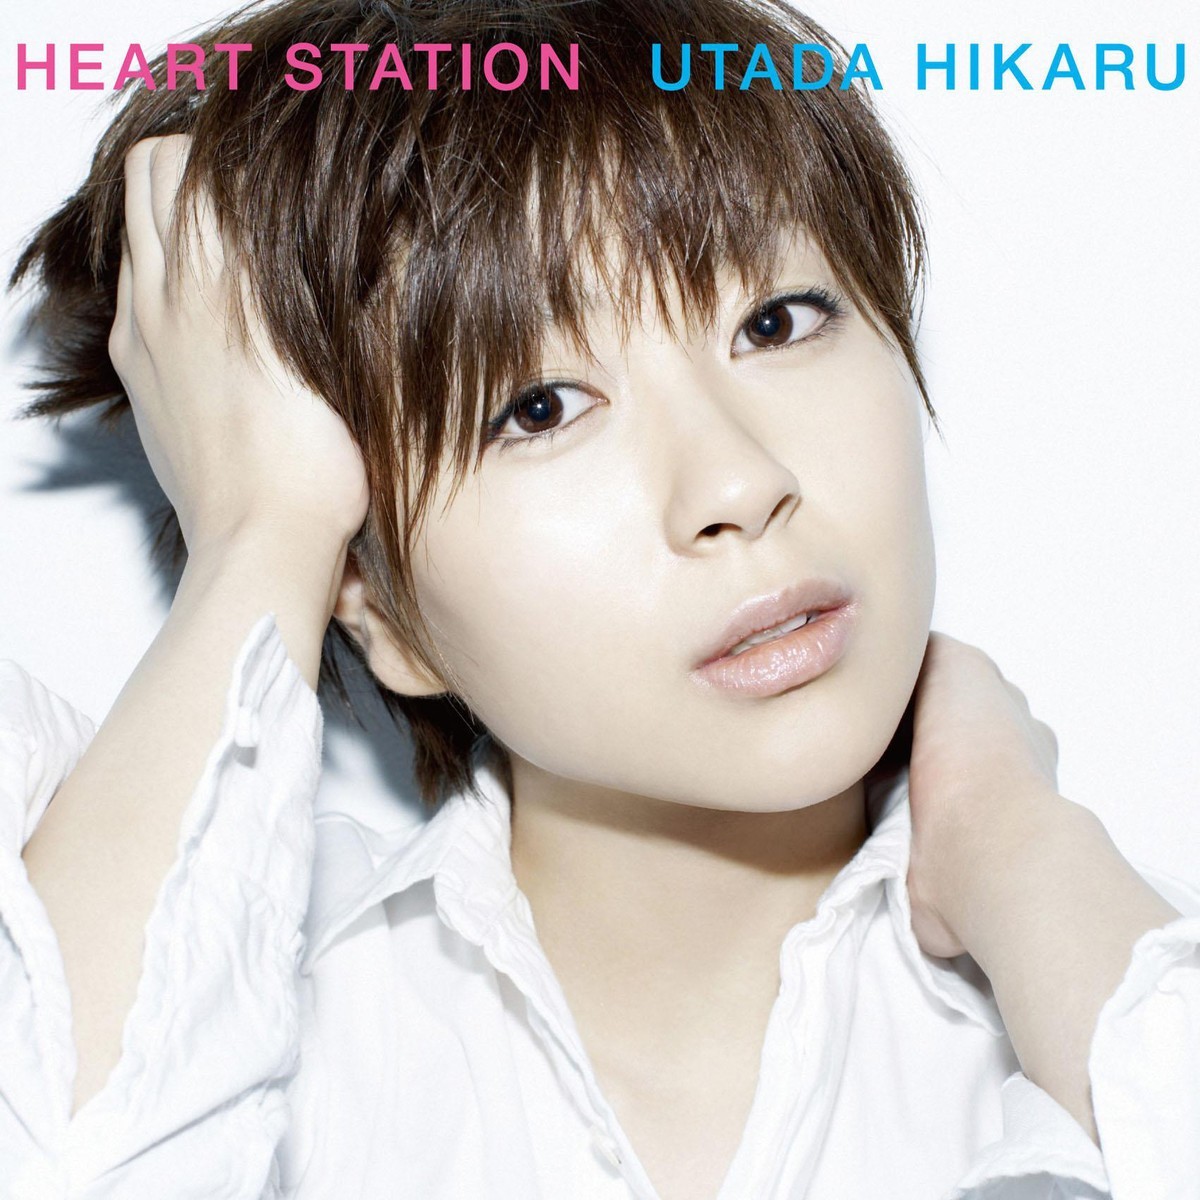 宇多田ヒカル (Utada Hikaru) – HEART STATION (2018 Remastered Album) [Mora FLAC 24bit/96kHz]